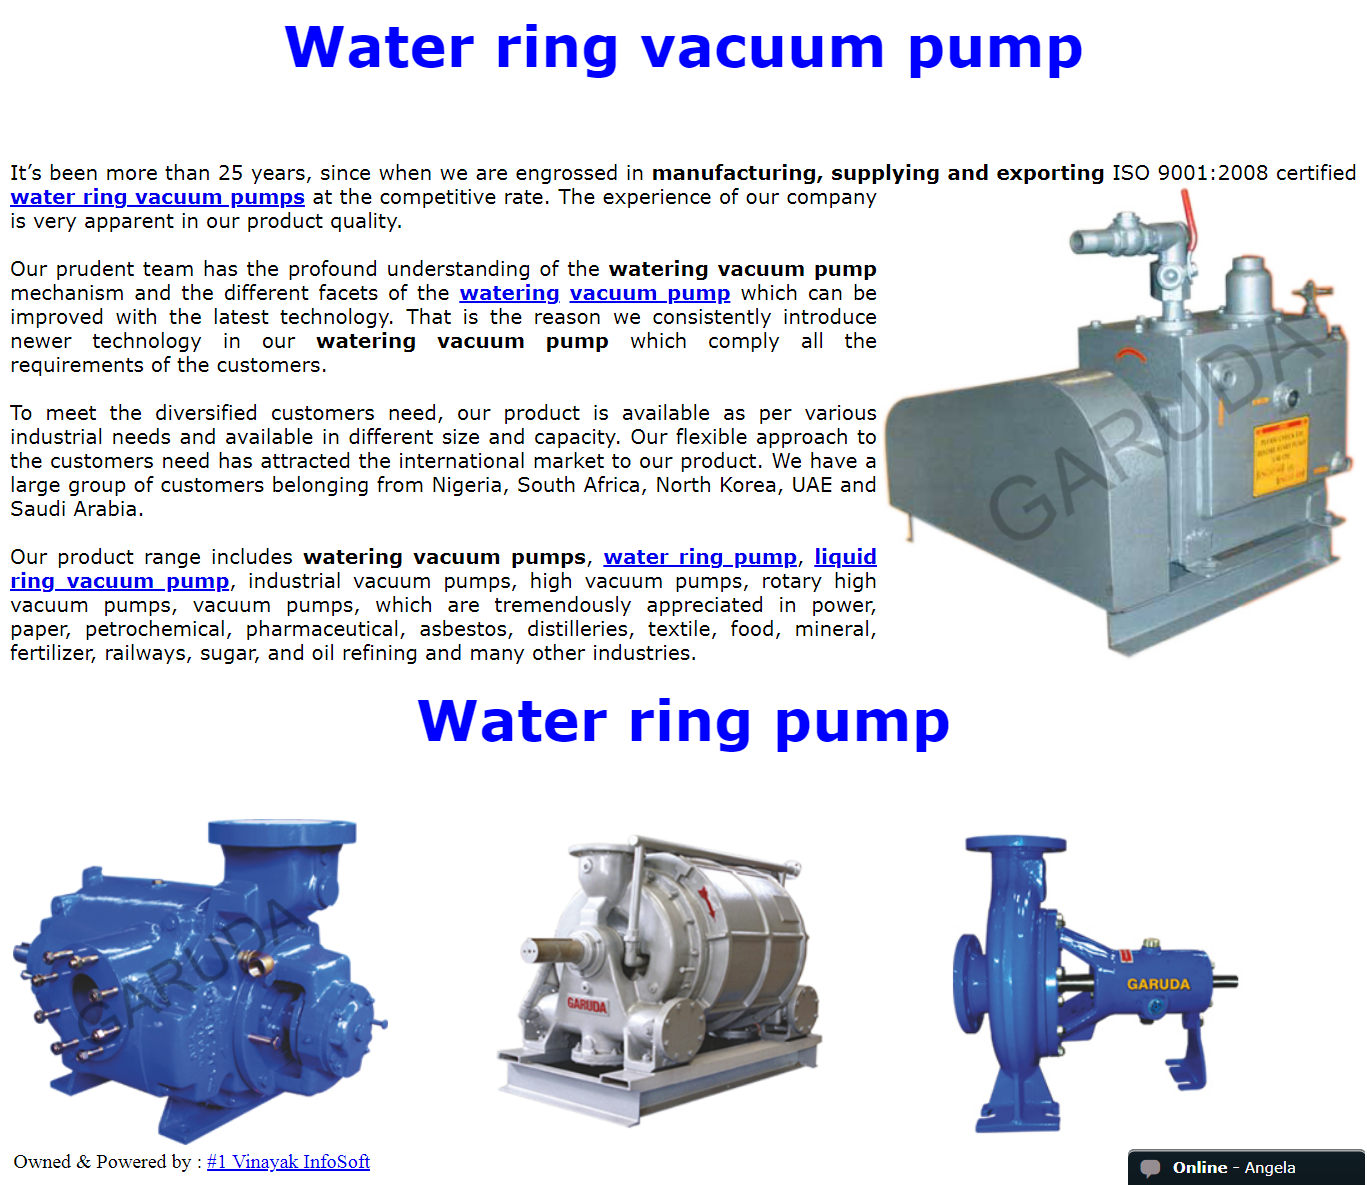 watering vacuum pump